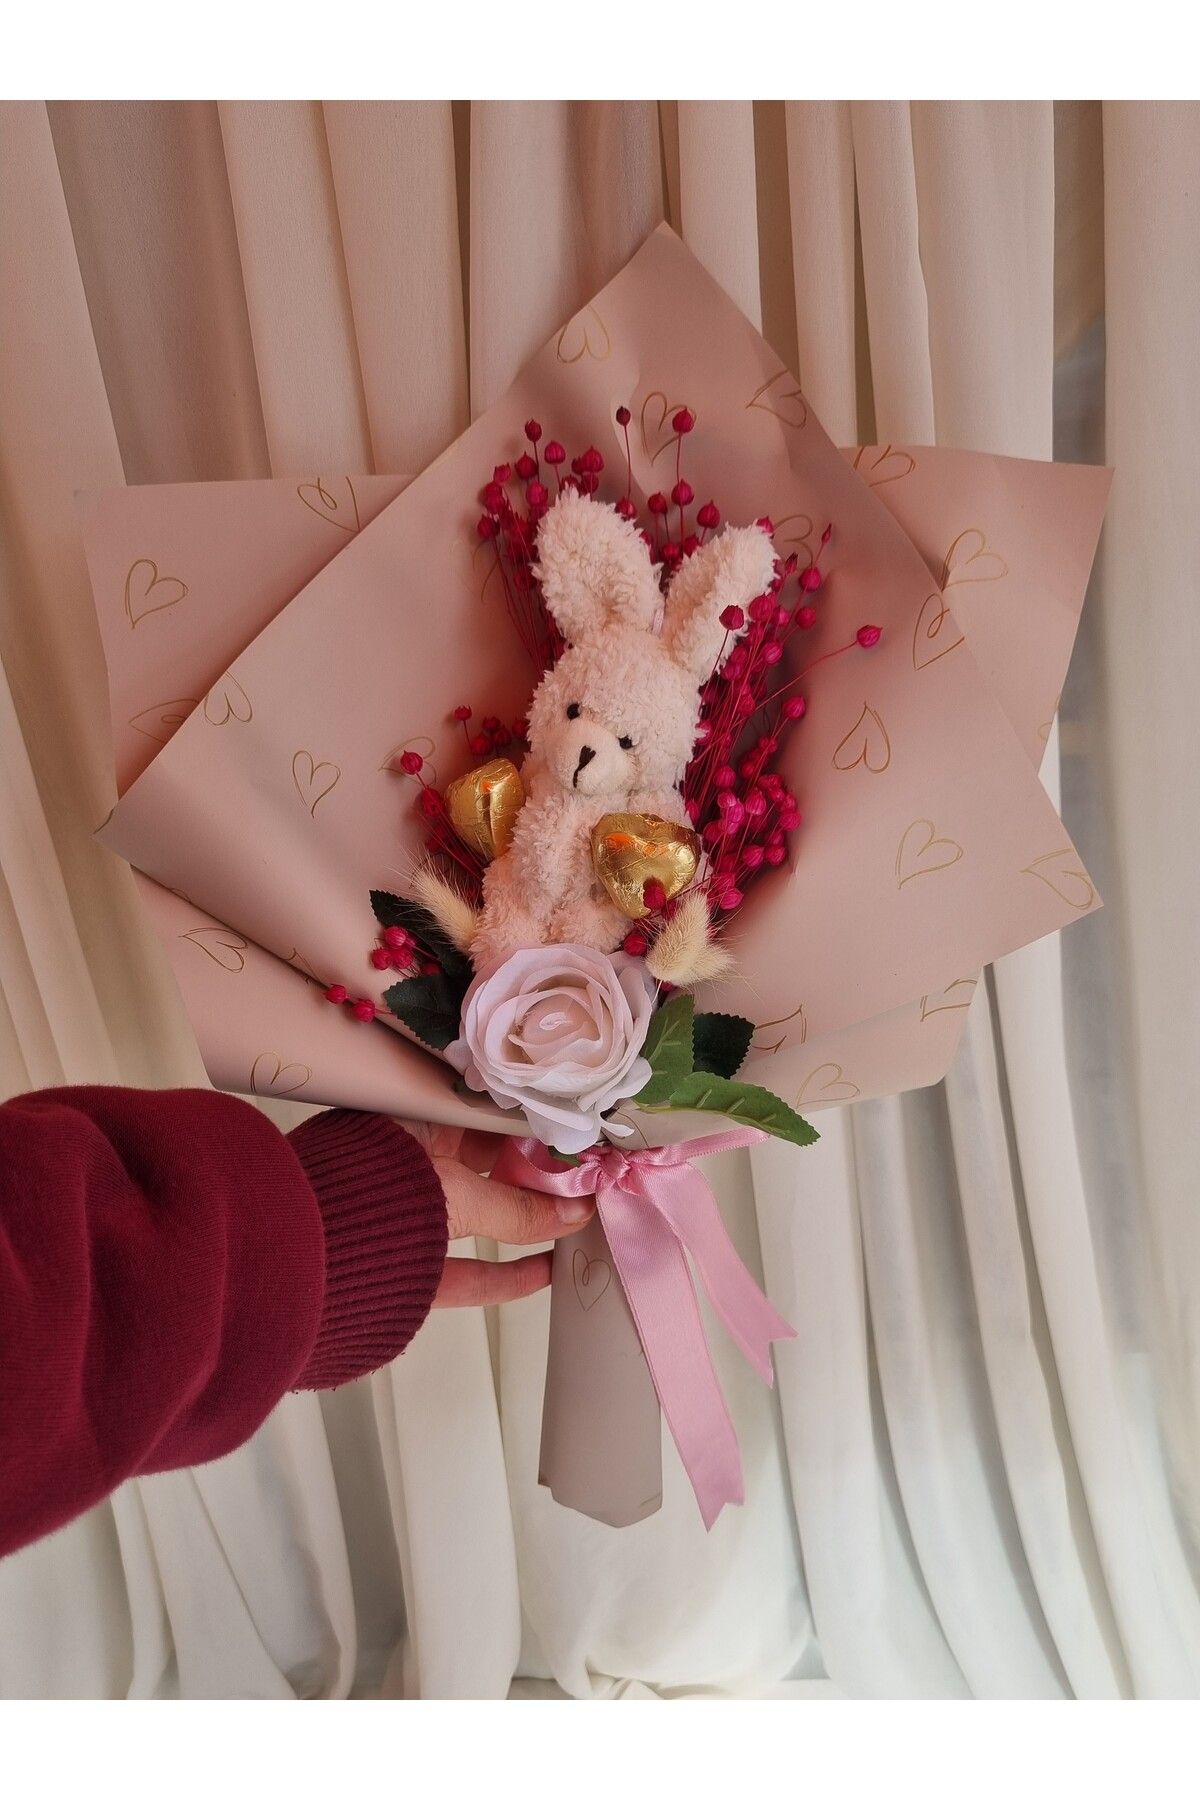 Destina Tasarım Sevgiliye Hediye Ayıcıklı buket çikolata Sevgiliye hediye/Arkadaşa Hediye/Doğum günü hediyesi